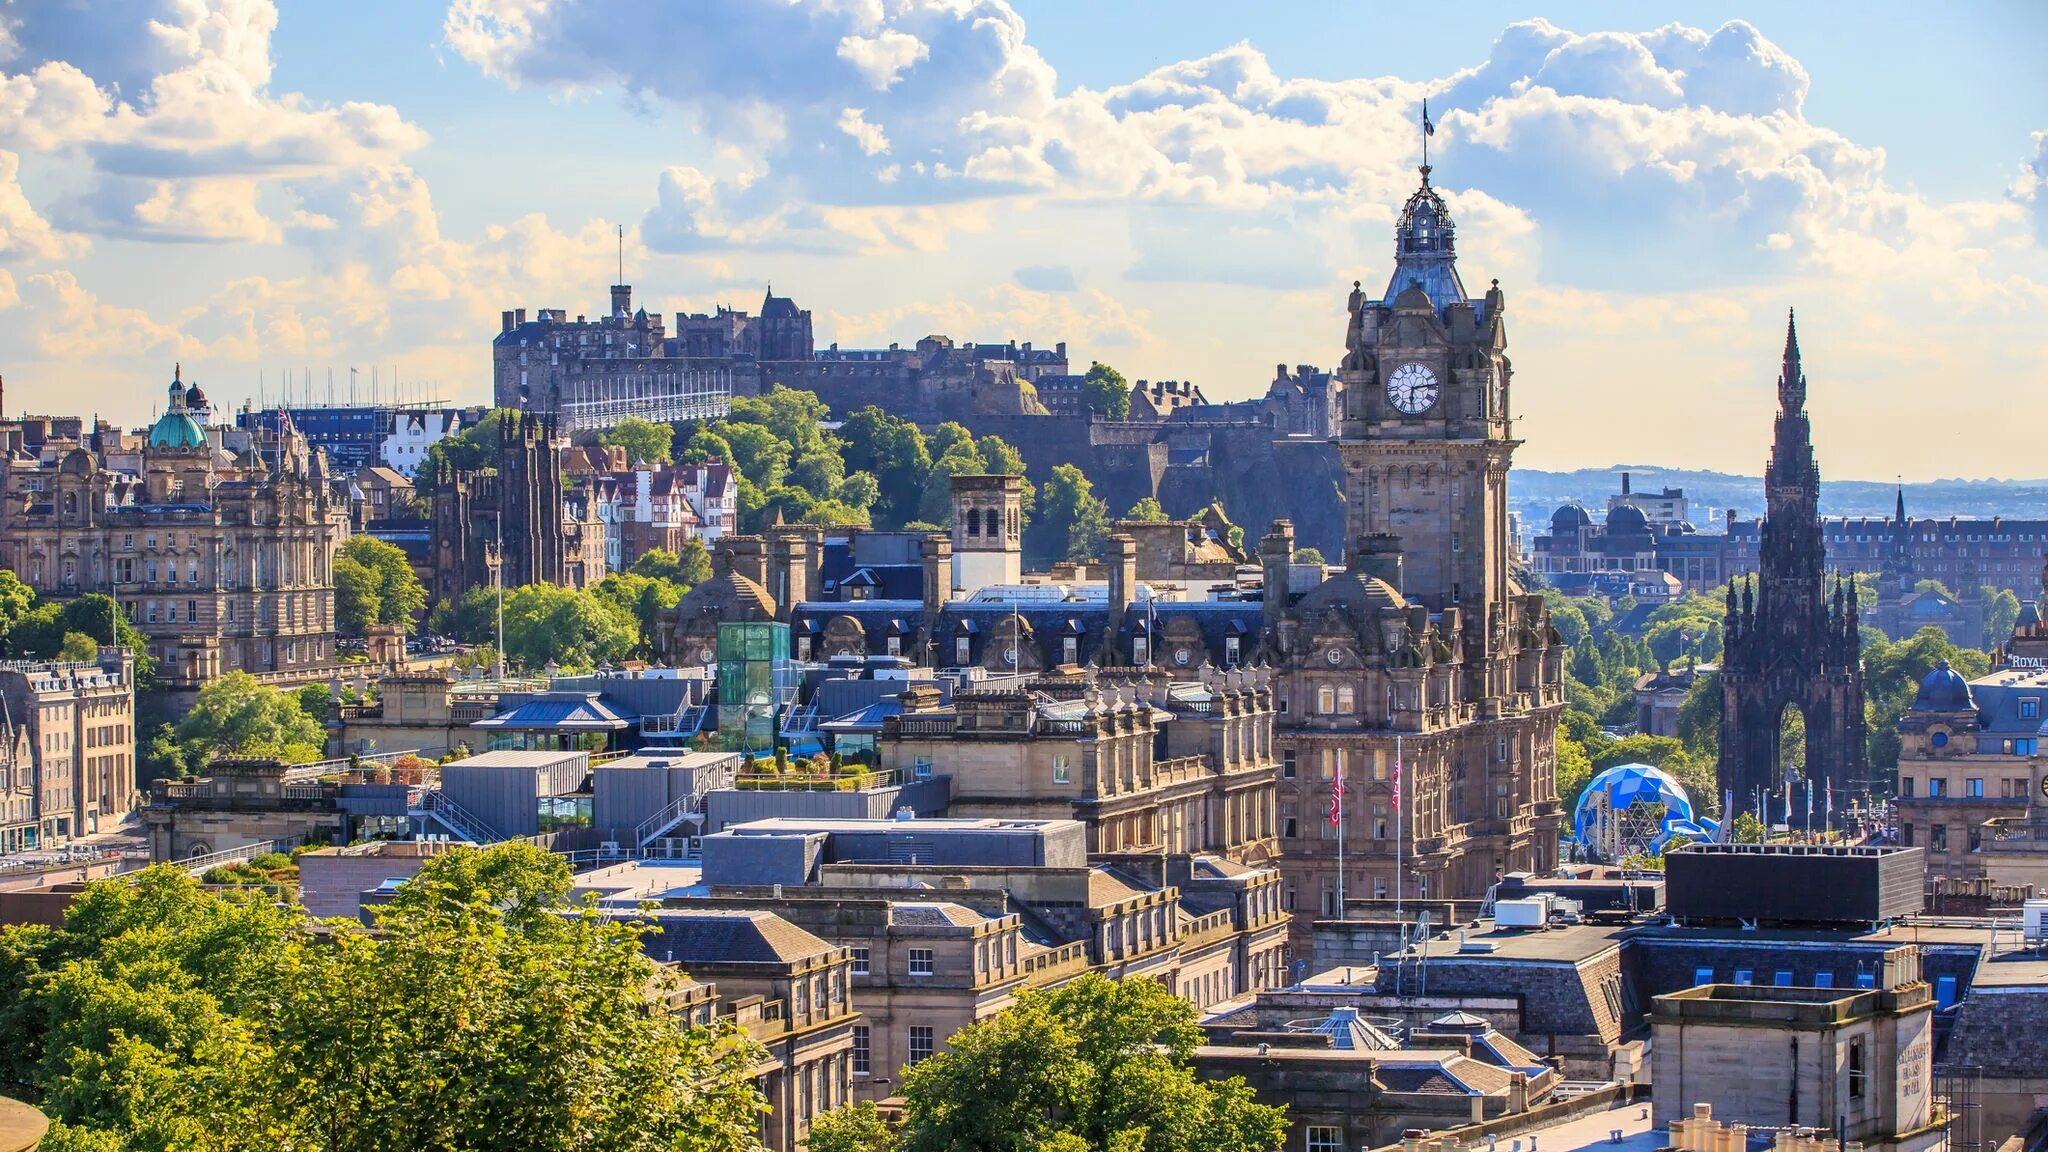 Площадь шотландии. Эдинбург Скотланд. Великобритания столица Эдинбург. Столица Шотландии Edinburgh. Столица Шотландии Глазго или Эдинбург.